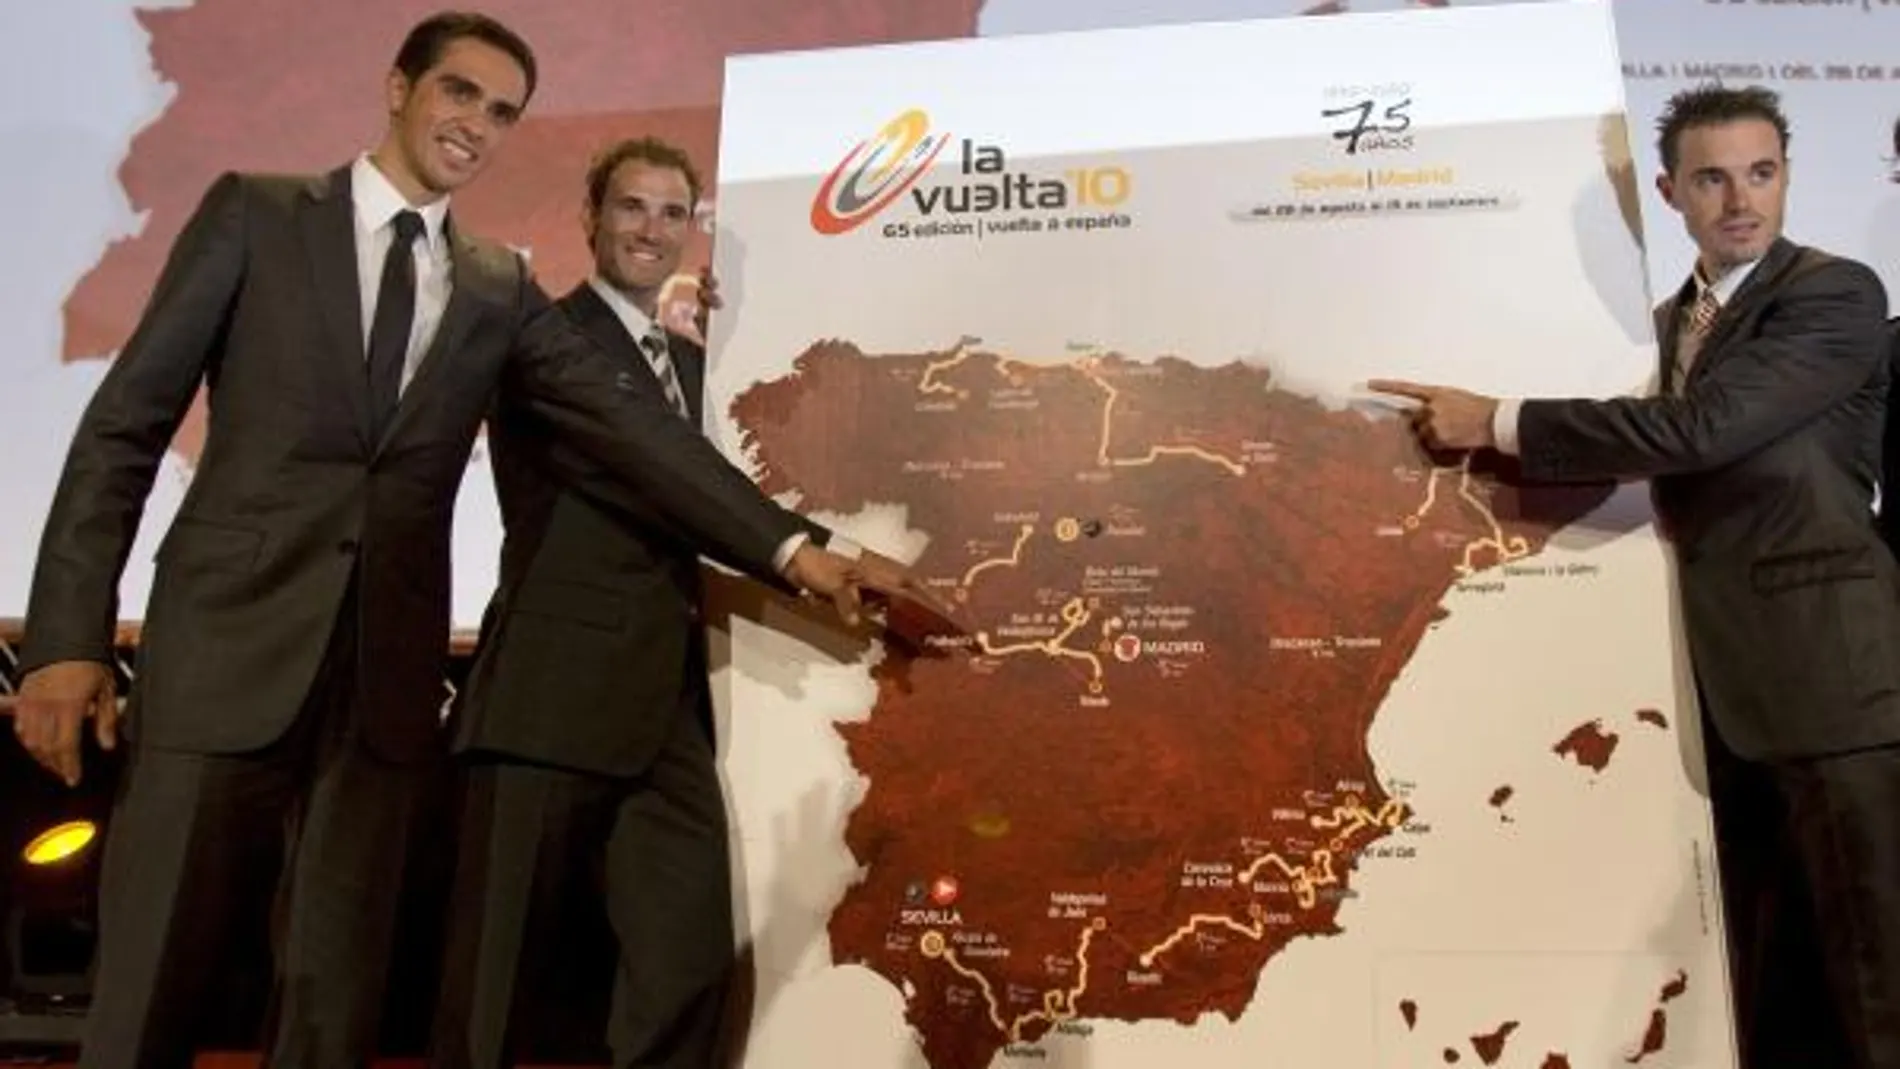 Imagen del día de la presentación de la Vuelta 2010